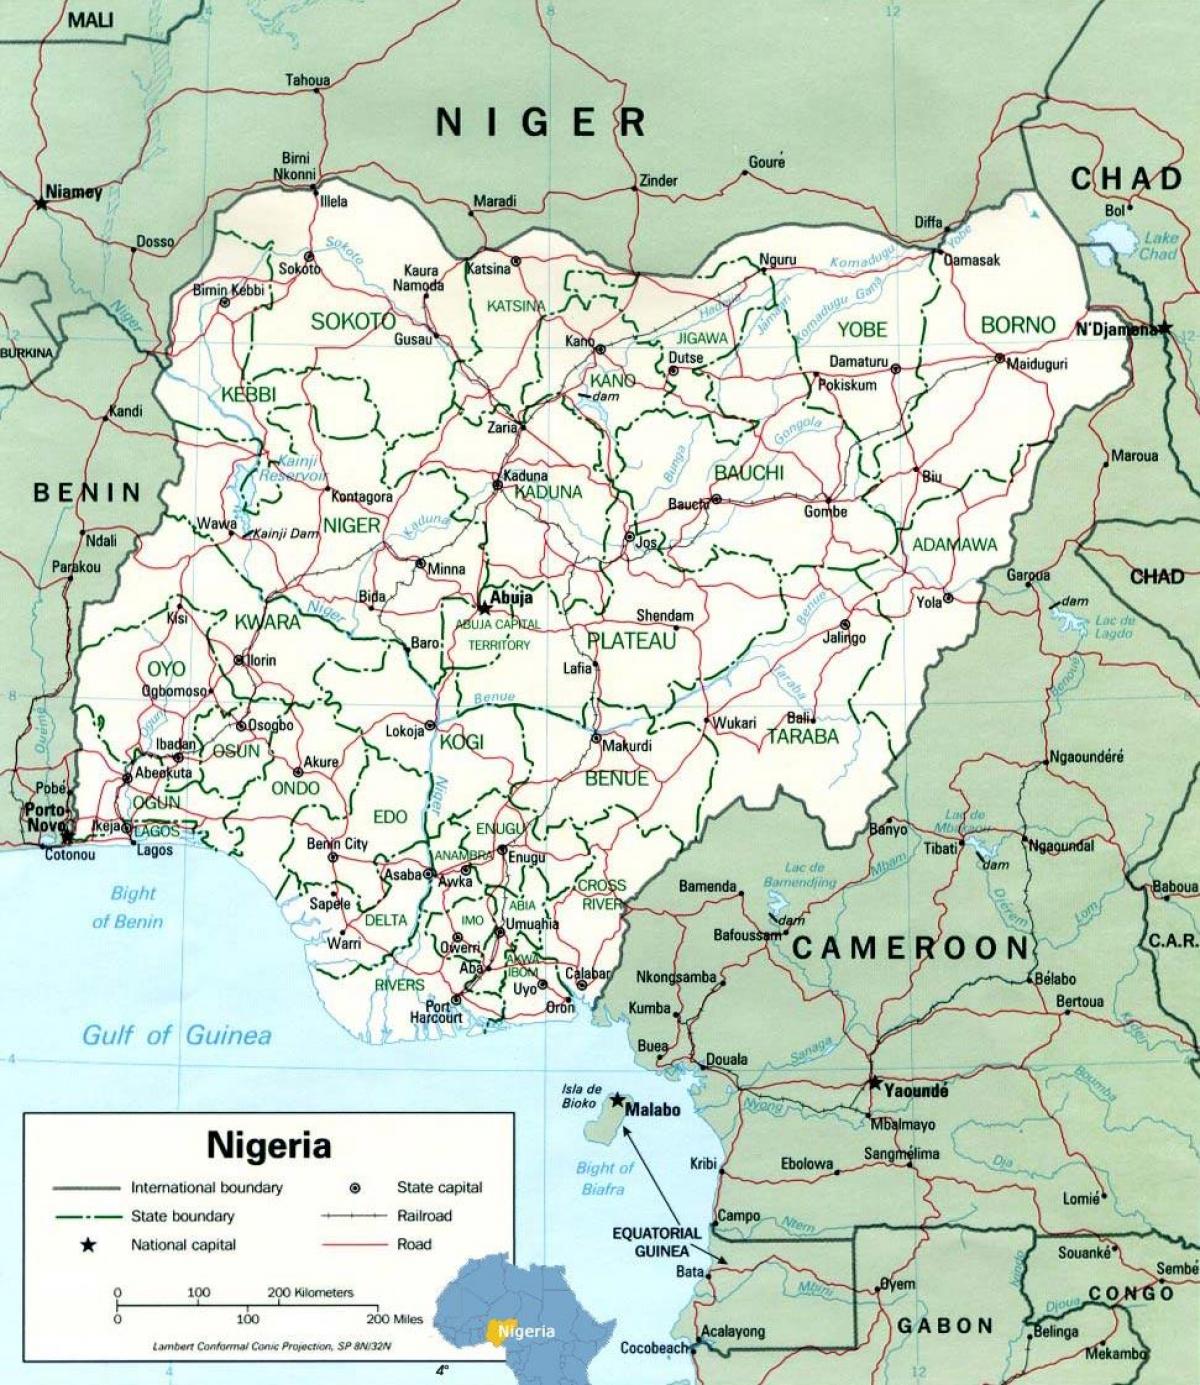 ლაგოსი ნიგერიის რუკაზე აფრიკა